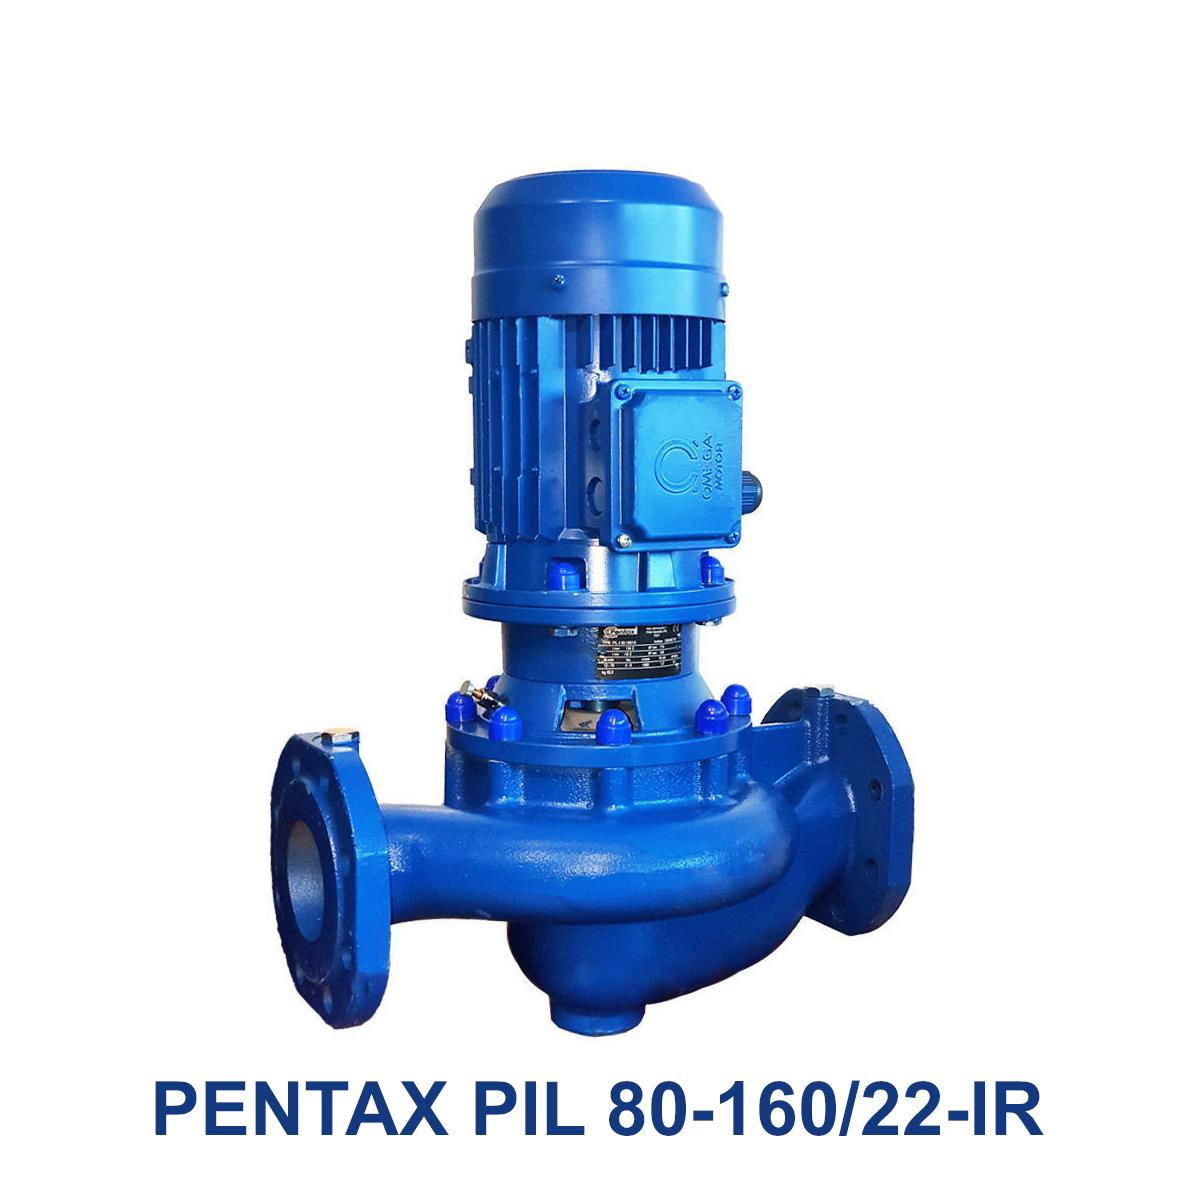 PENTAX-PIL-80-160-22-IR